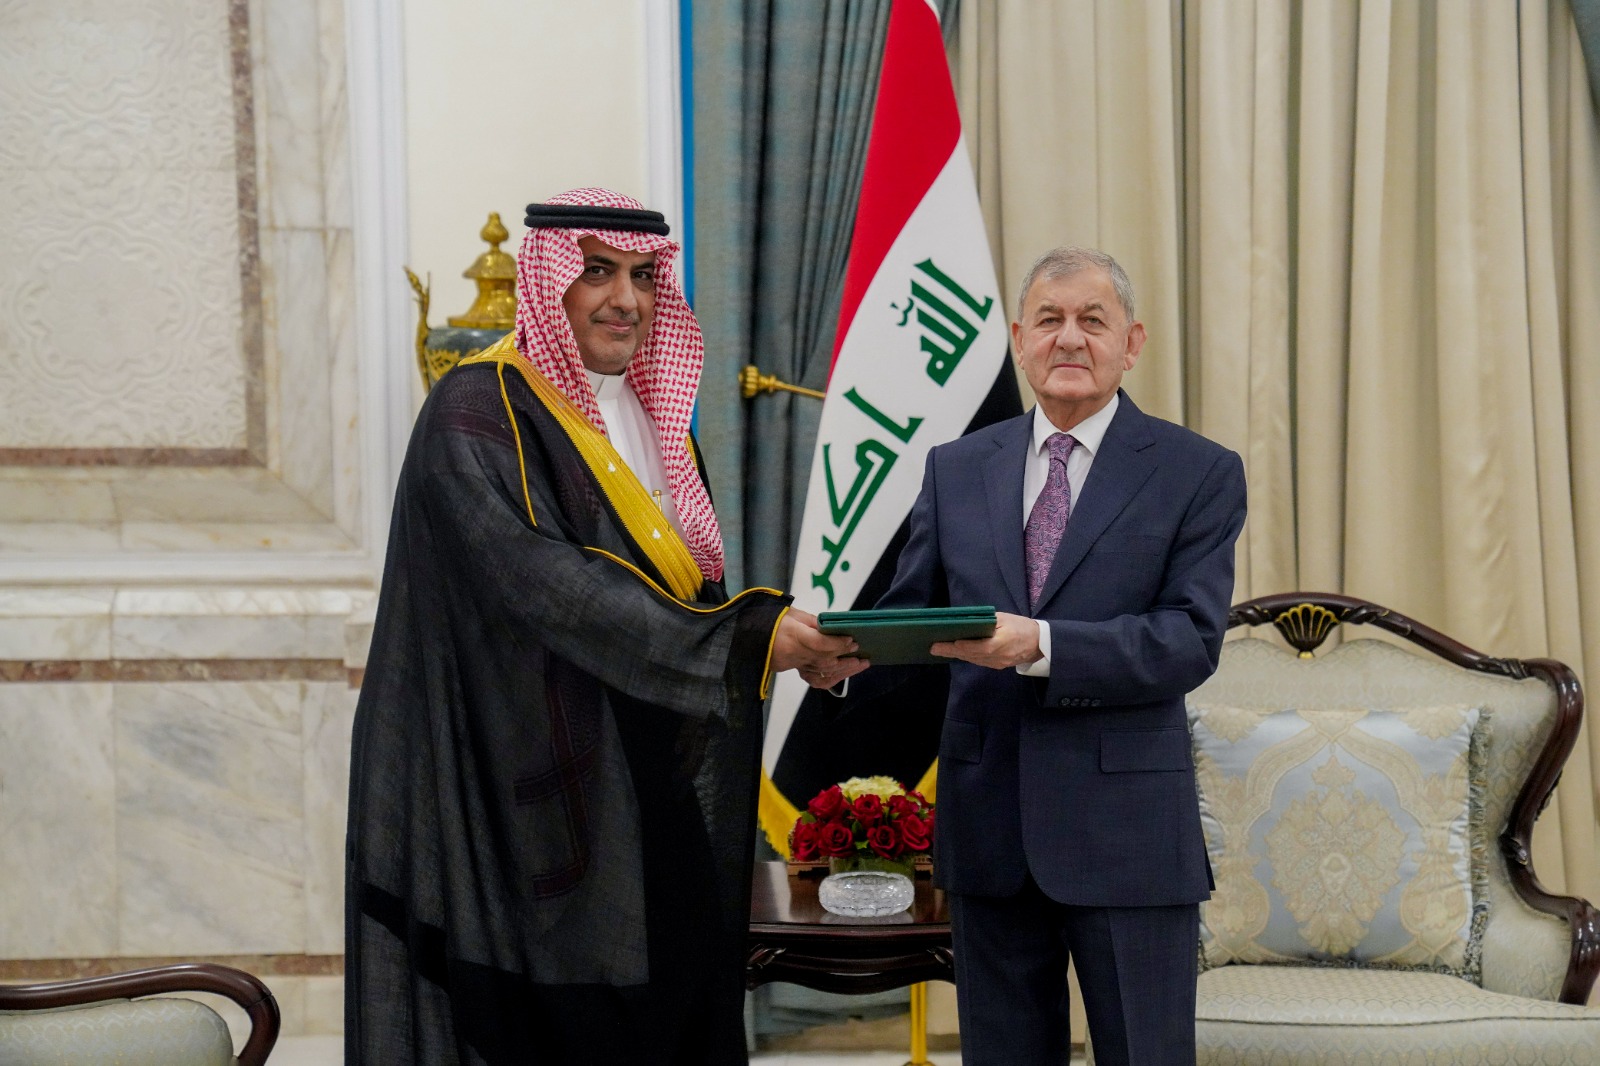 الرئيس العراقي يتلقى دعوة رسمية لحضور القمة العربية في السعودية